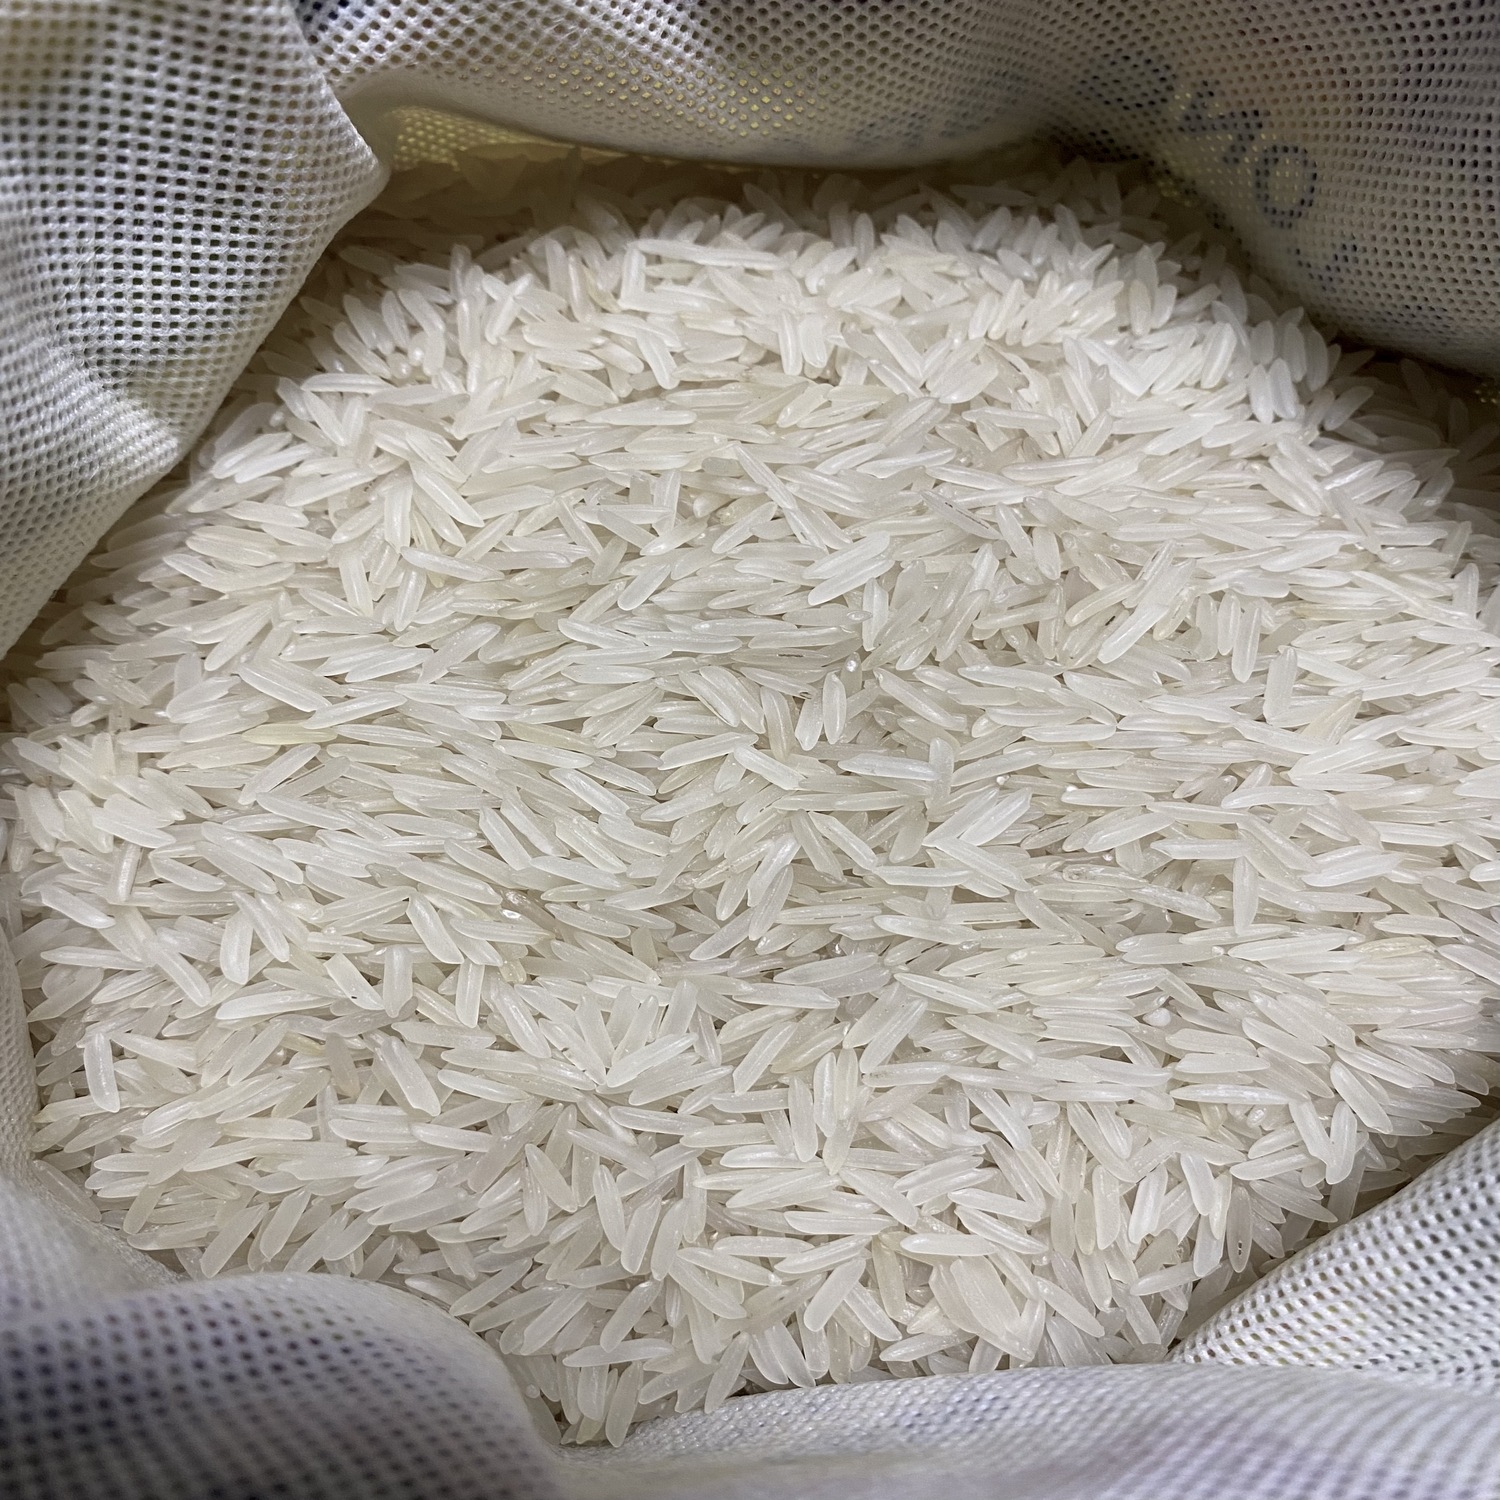 Рис басмати индийский DAS пропаренный мешок на молнии 5 кг - фото 3